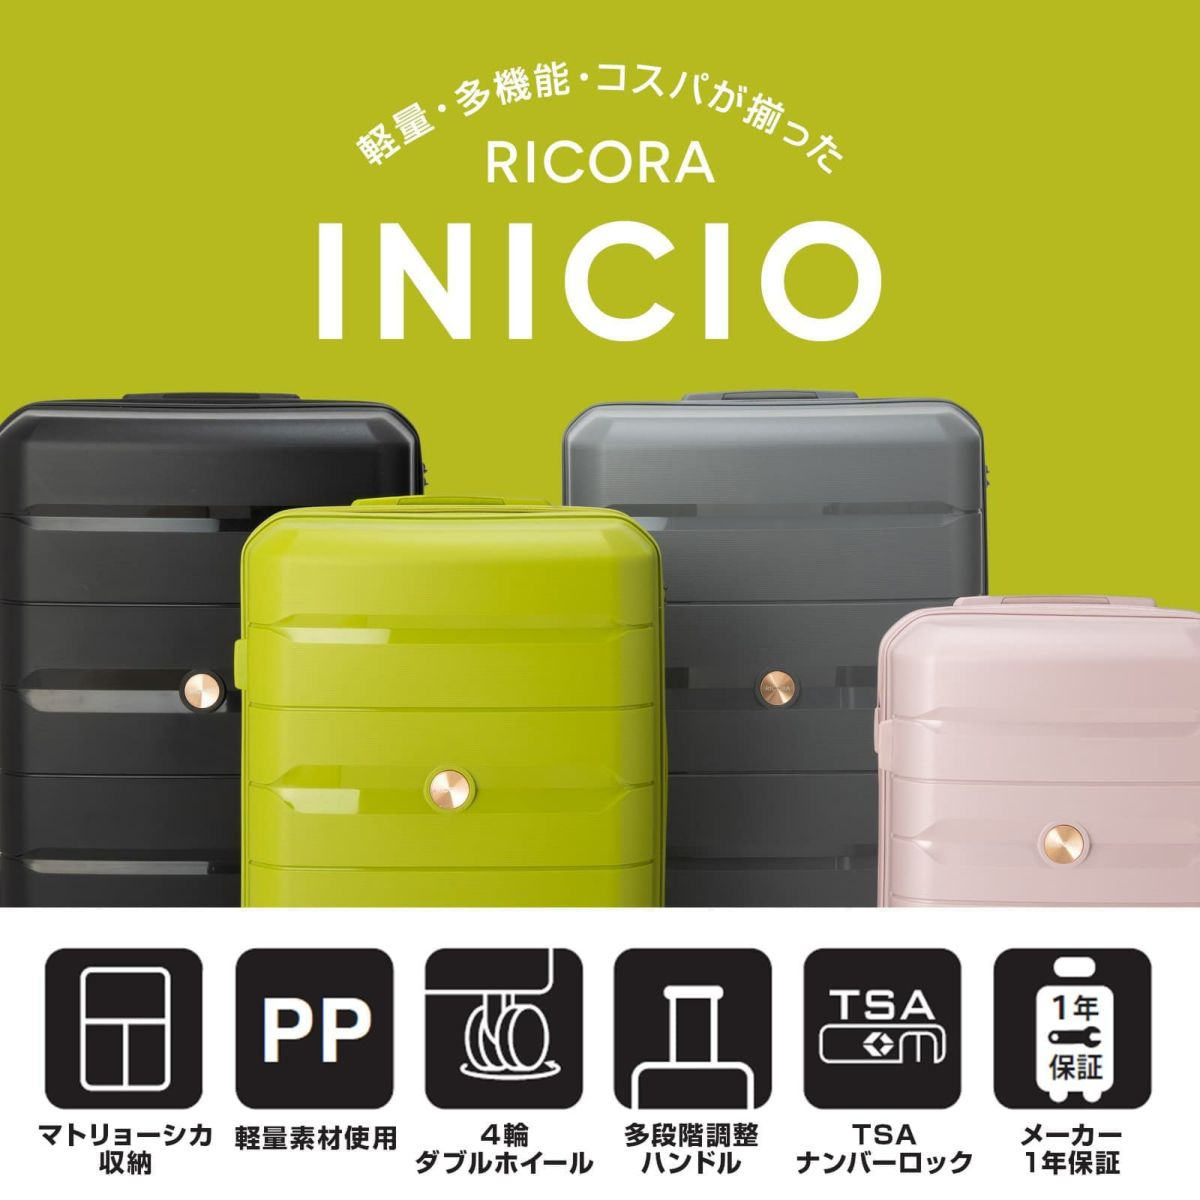 RICORA リコラ】 INICIO スーツケース 機内持ち込み Sサイズ 34L 